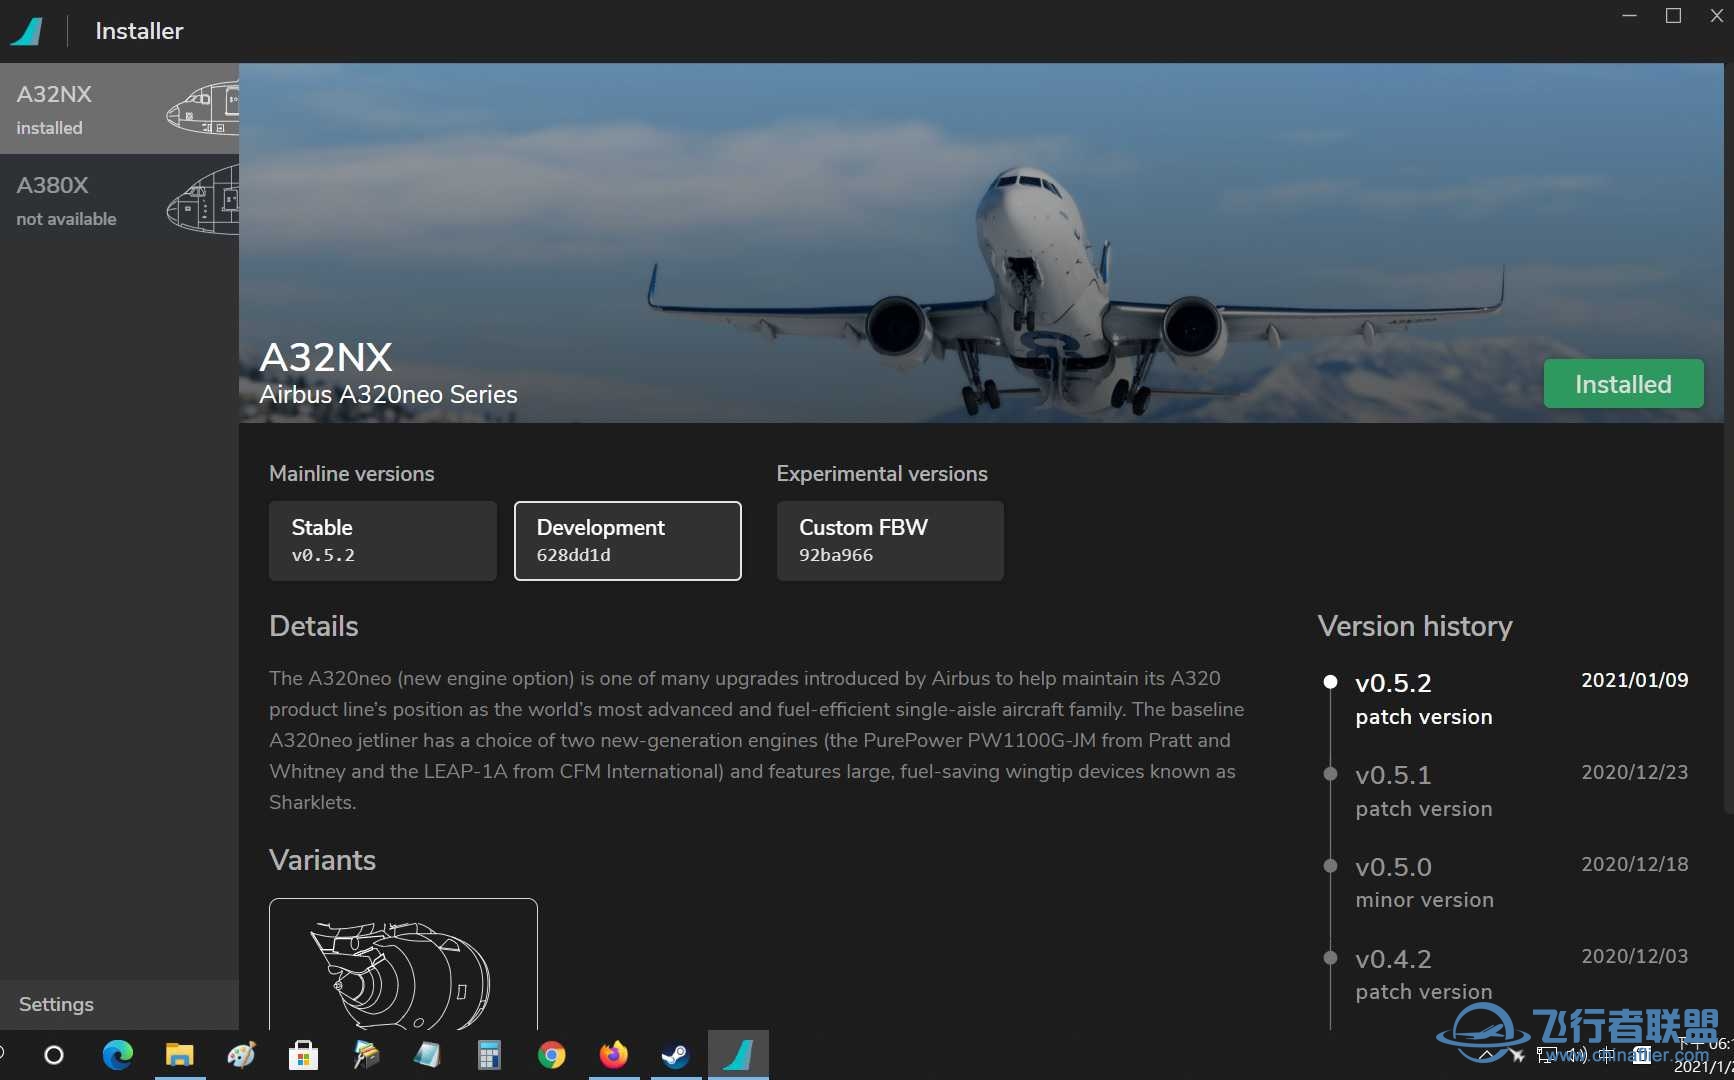 下載安'裝最新的開發版A320NX-1623 